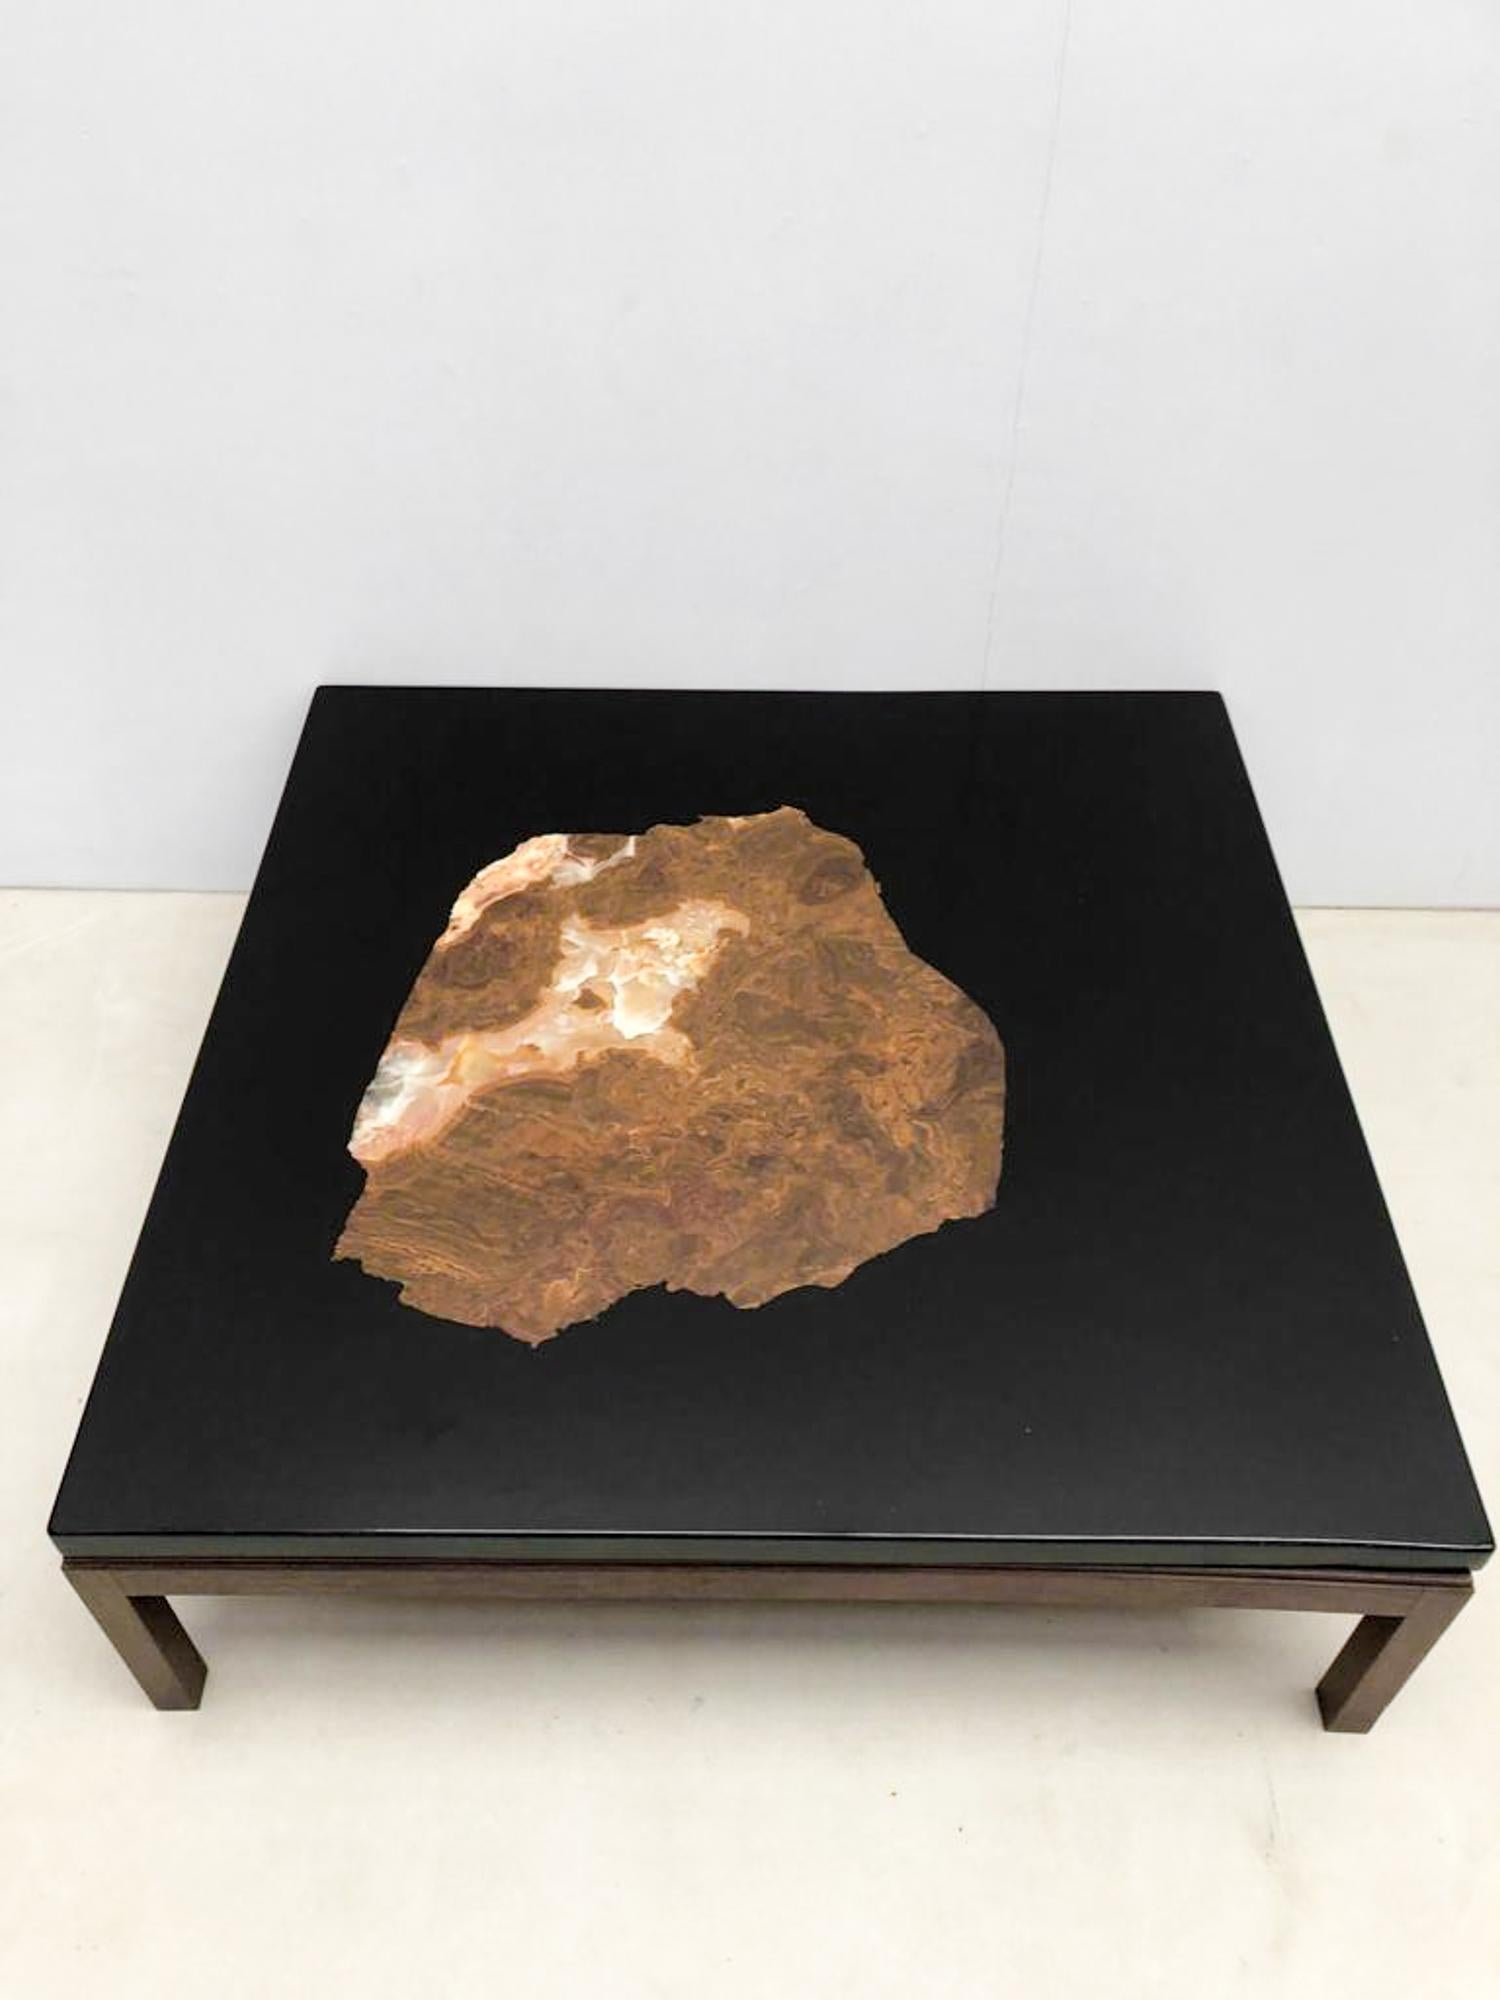 L'artisan Etienne Allemeersch, qui a affiné son art dans l'atelier de l'artiste belge Ado Chale, a réalisé cette table basse en résine ornée d'incrustations de pierres fossiles. 

N'hésitez pas à nous contacter pour toute information